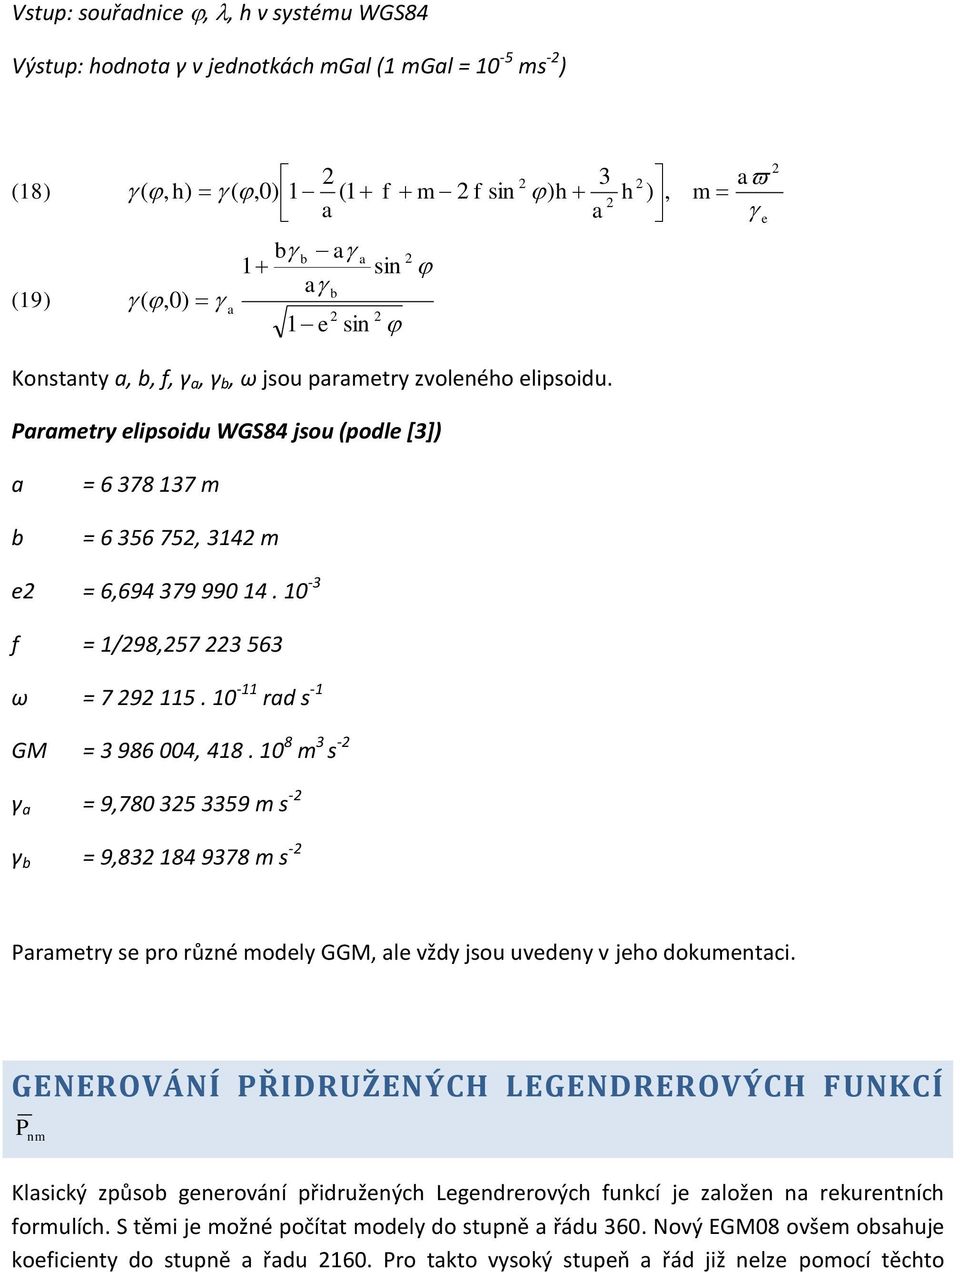 10-11 rad s -1 GM = 3 986 004, 418. 10 8 m 3 s - γ a = 9,780 35 3359 m s - γ b = 9,83 184 9378 m s - Parametry se pro růzé modely GGM, ale vždy jsou uvedey v jeho dokumetaci.